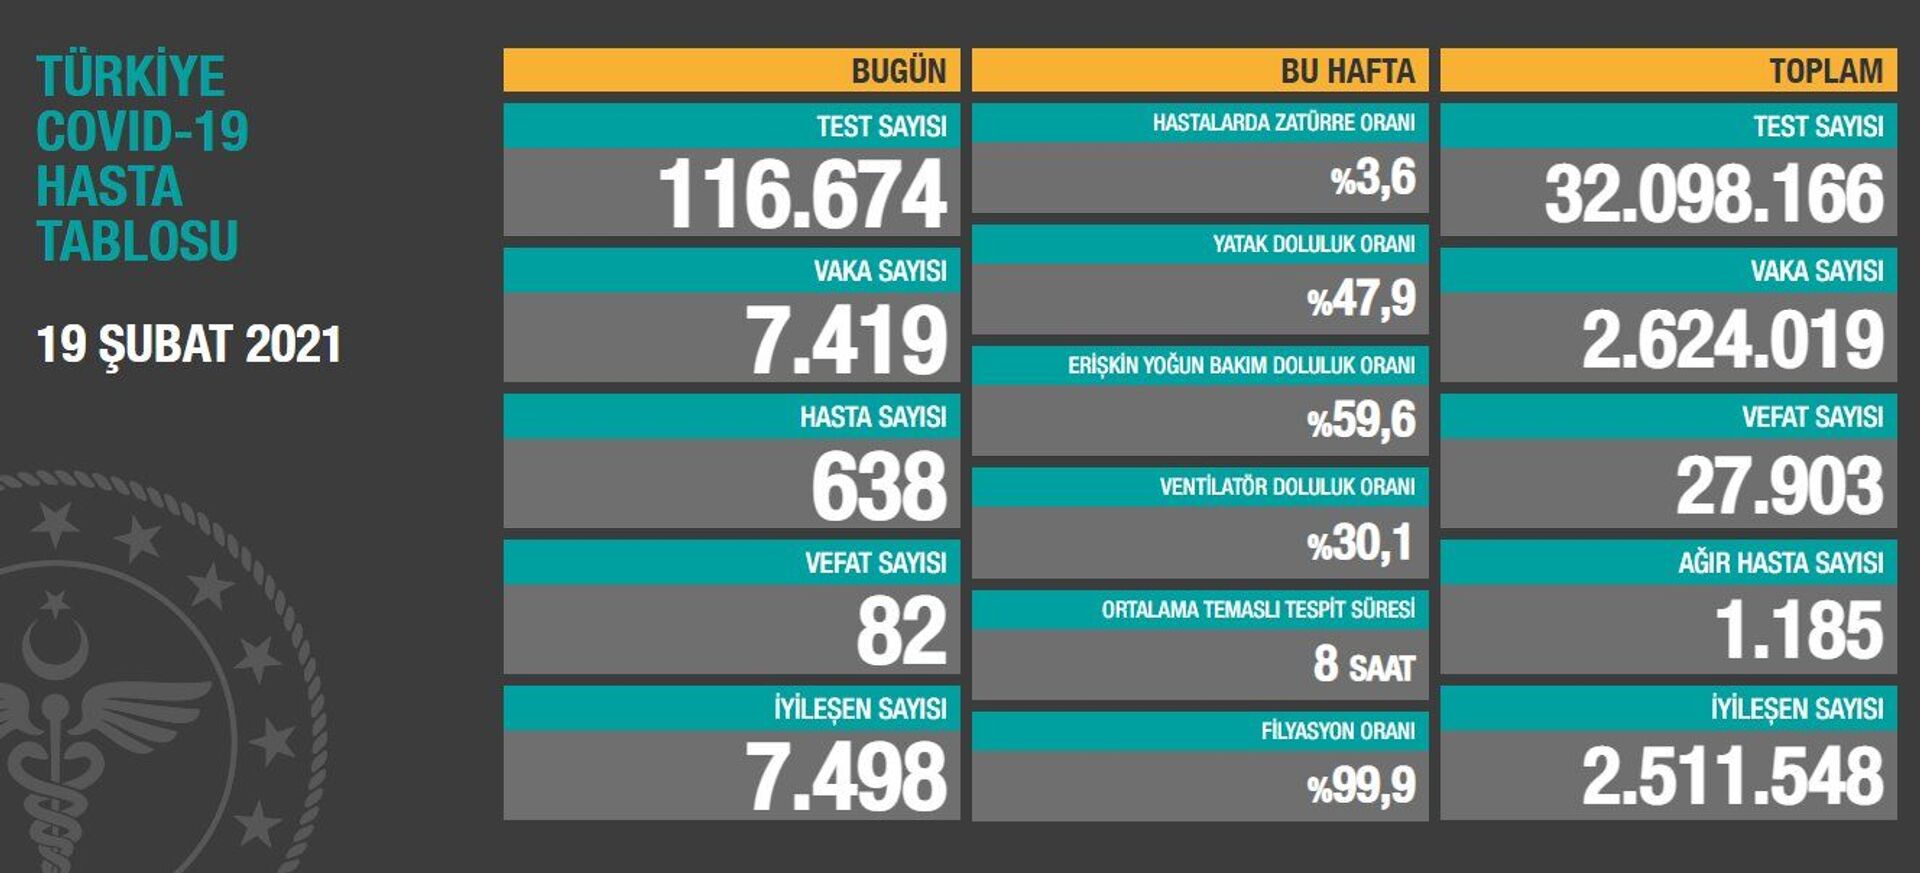 Türkiye'de 7 bin 419 kişinin Kovid-19 testi pozitif çıktı, 82 kişi hayatını kaybetti - Sputnik Türkiye, 1920, 19.02.2021